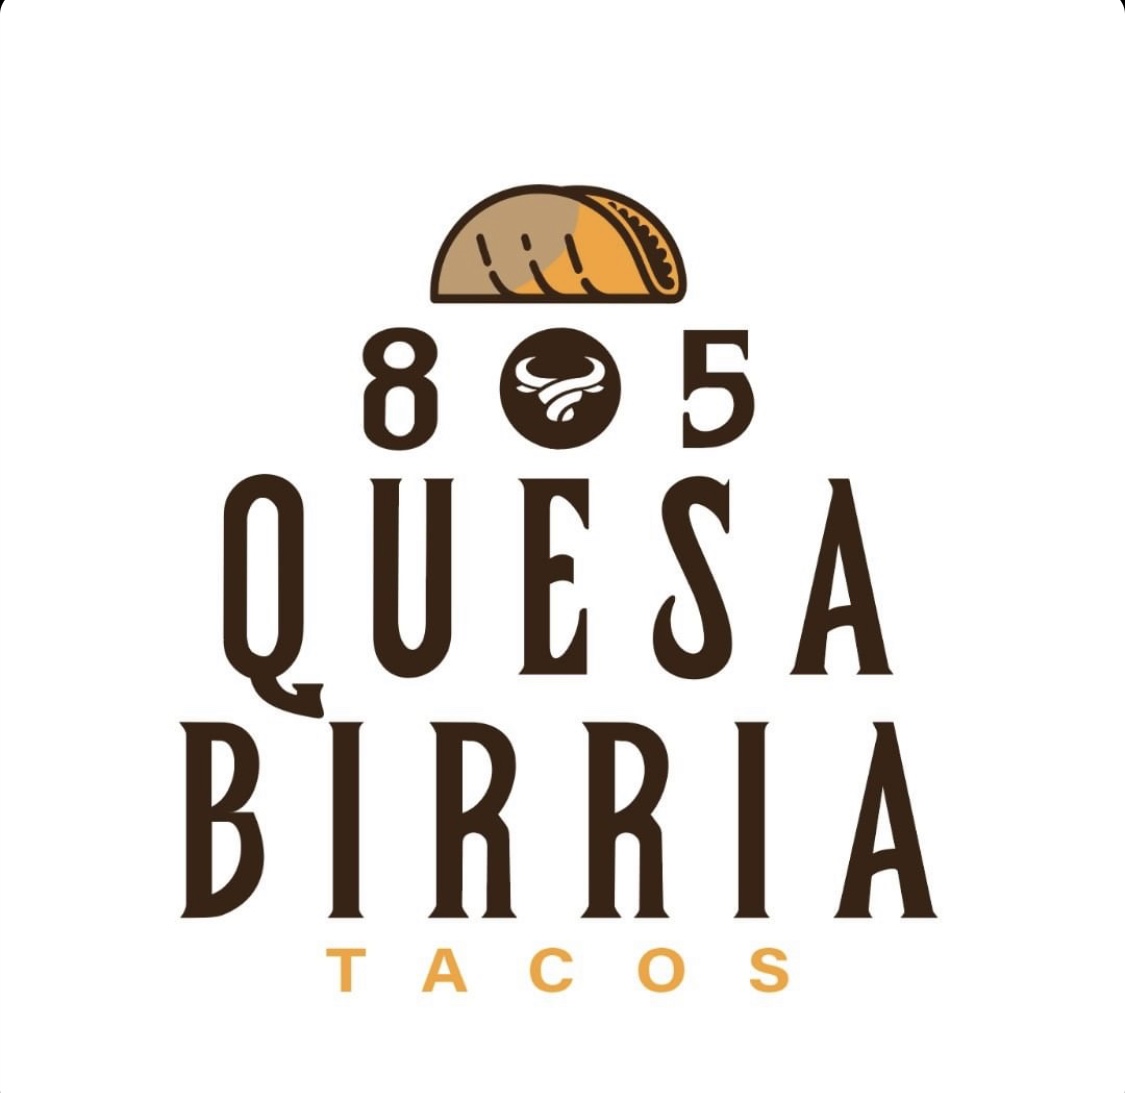 805 Quesa Birria Tacos Logo